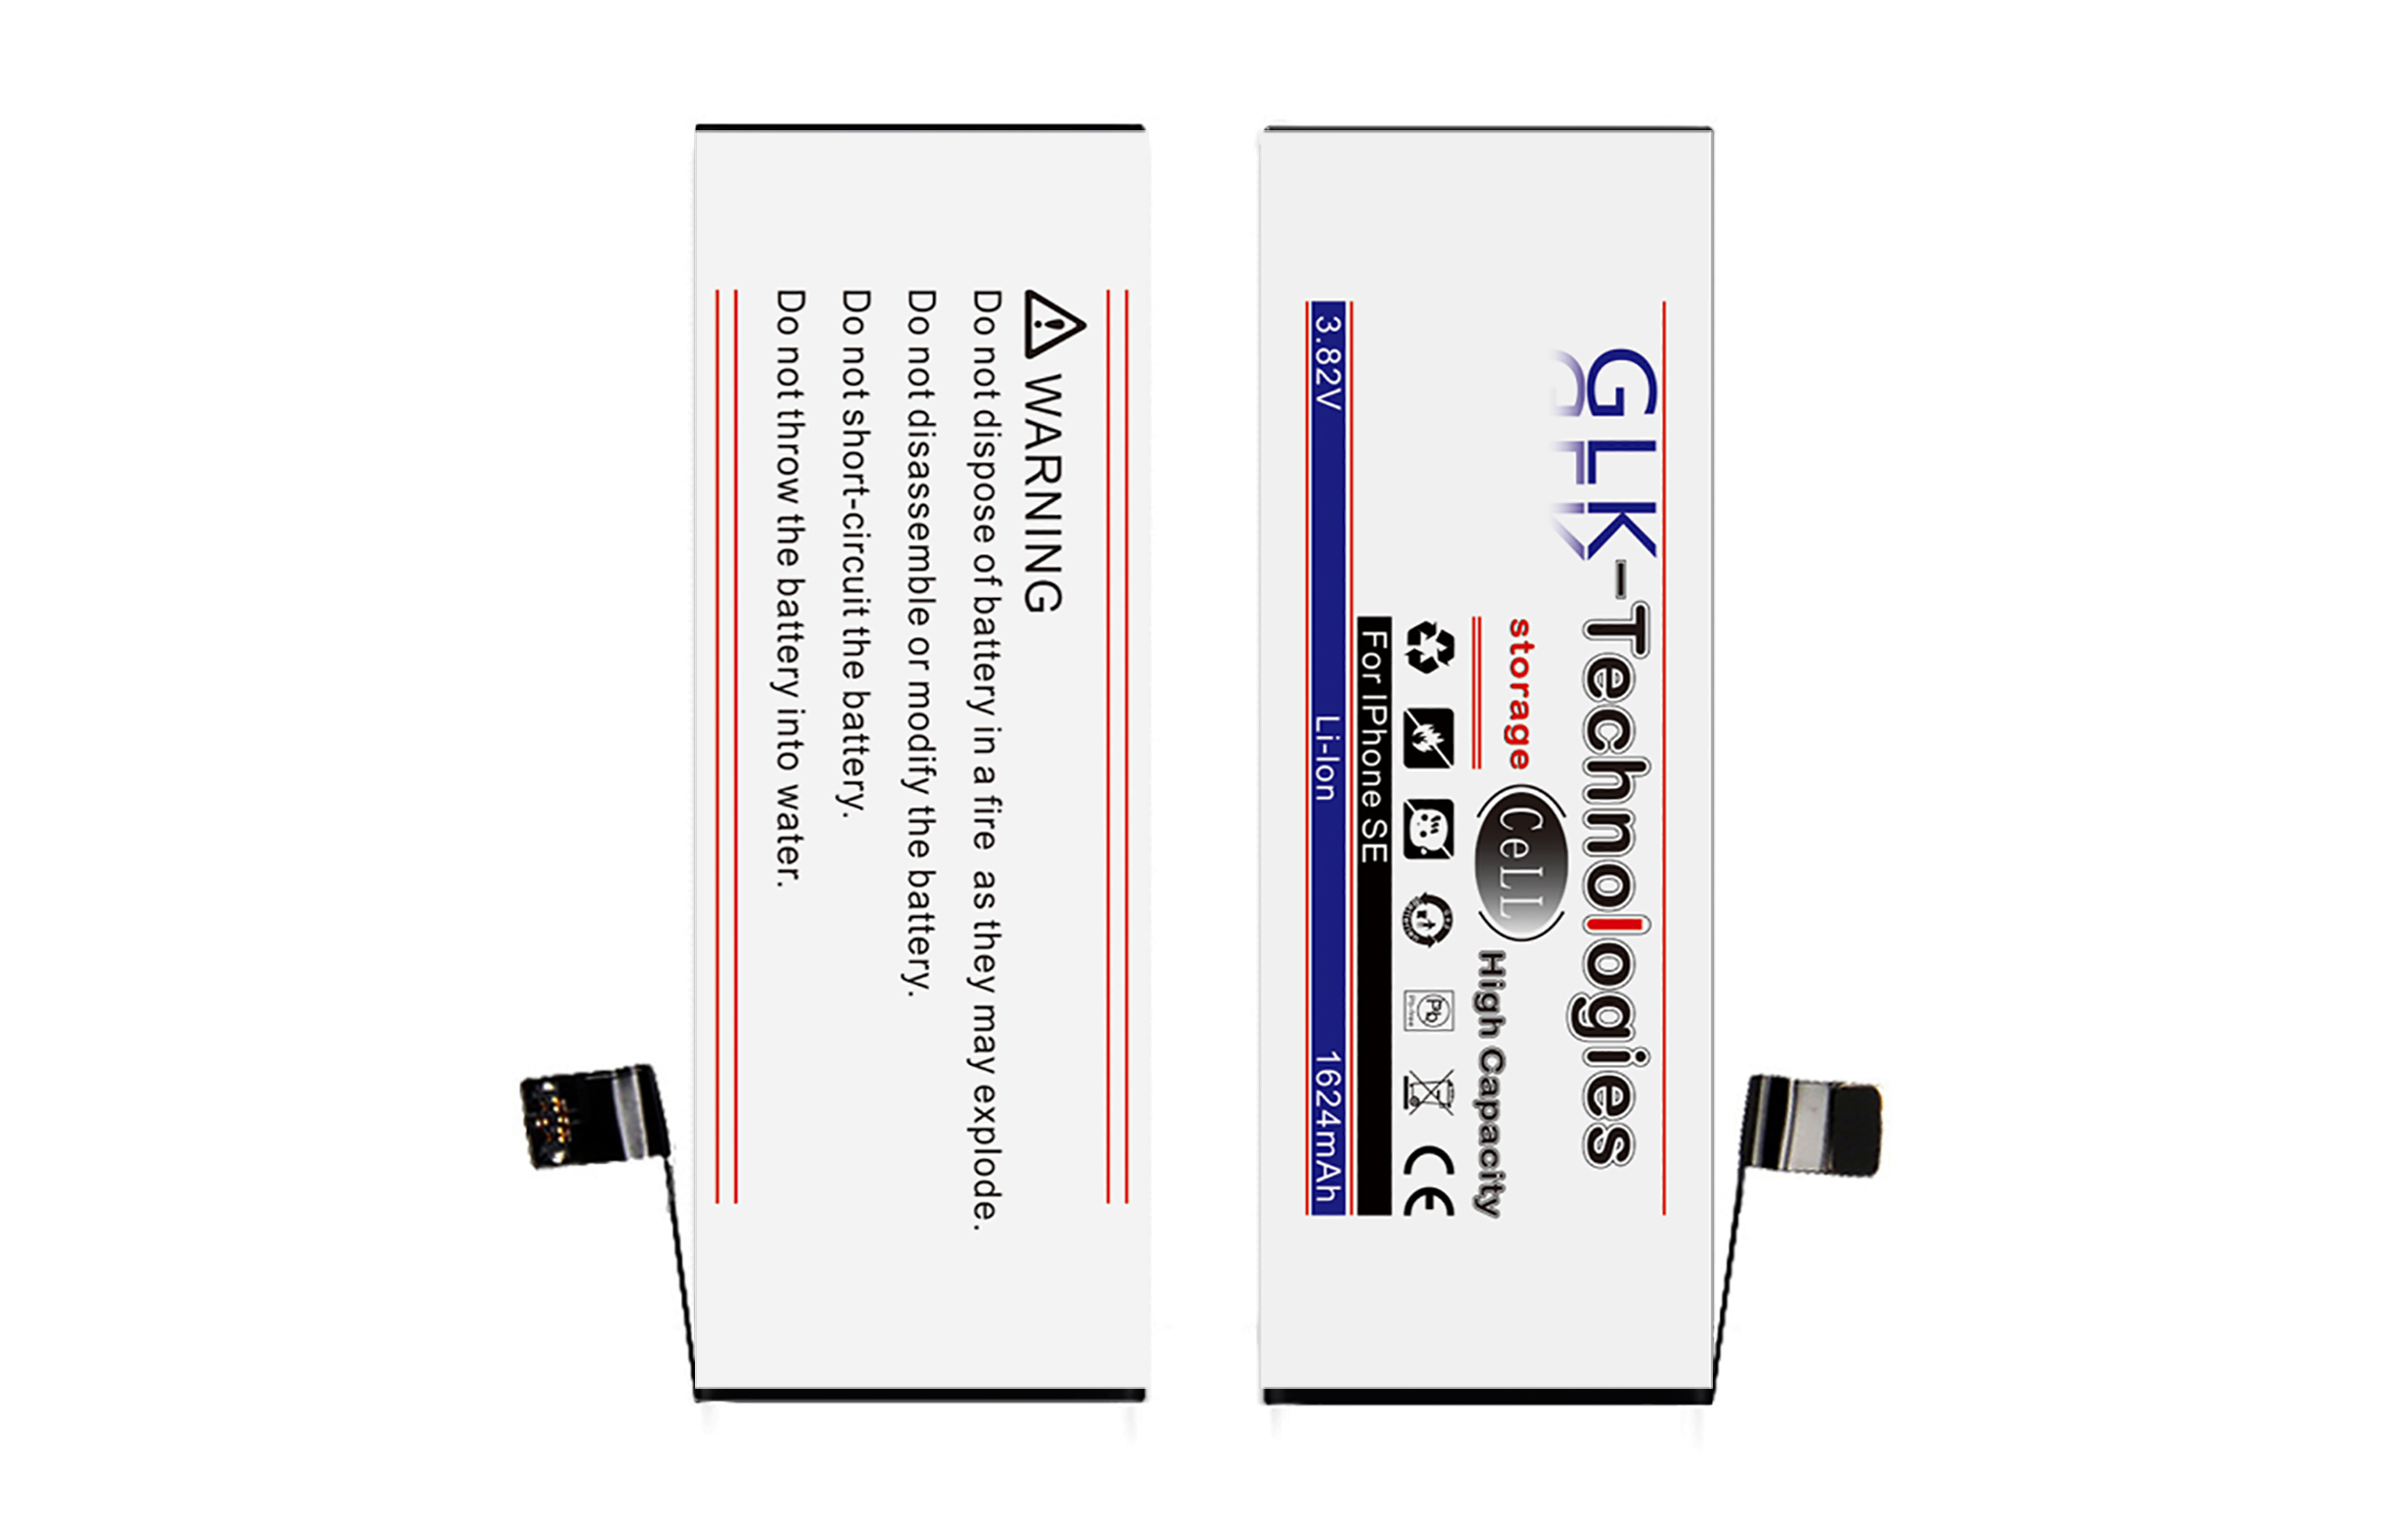 GLK-TECHNOLOGIES High für Lithium-Ionen, Set Werkzeug mAh iPhone Akku Ersatz Smartphone 1624 Volt, Akku, SE Ersatz 2016 3.8 inkl. 1624mAh Power Battery Lithium-Ionen-Akku